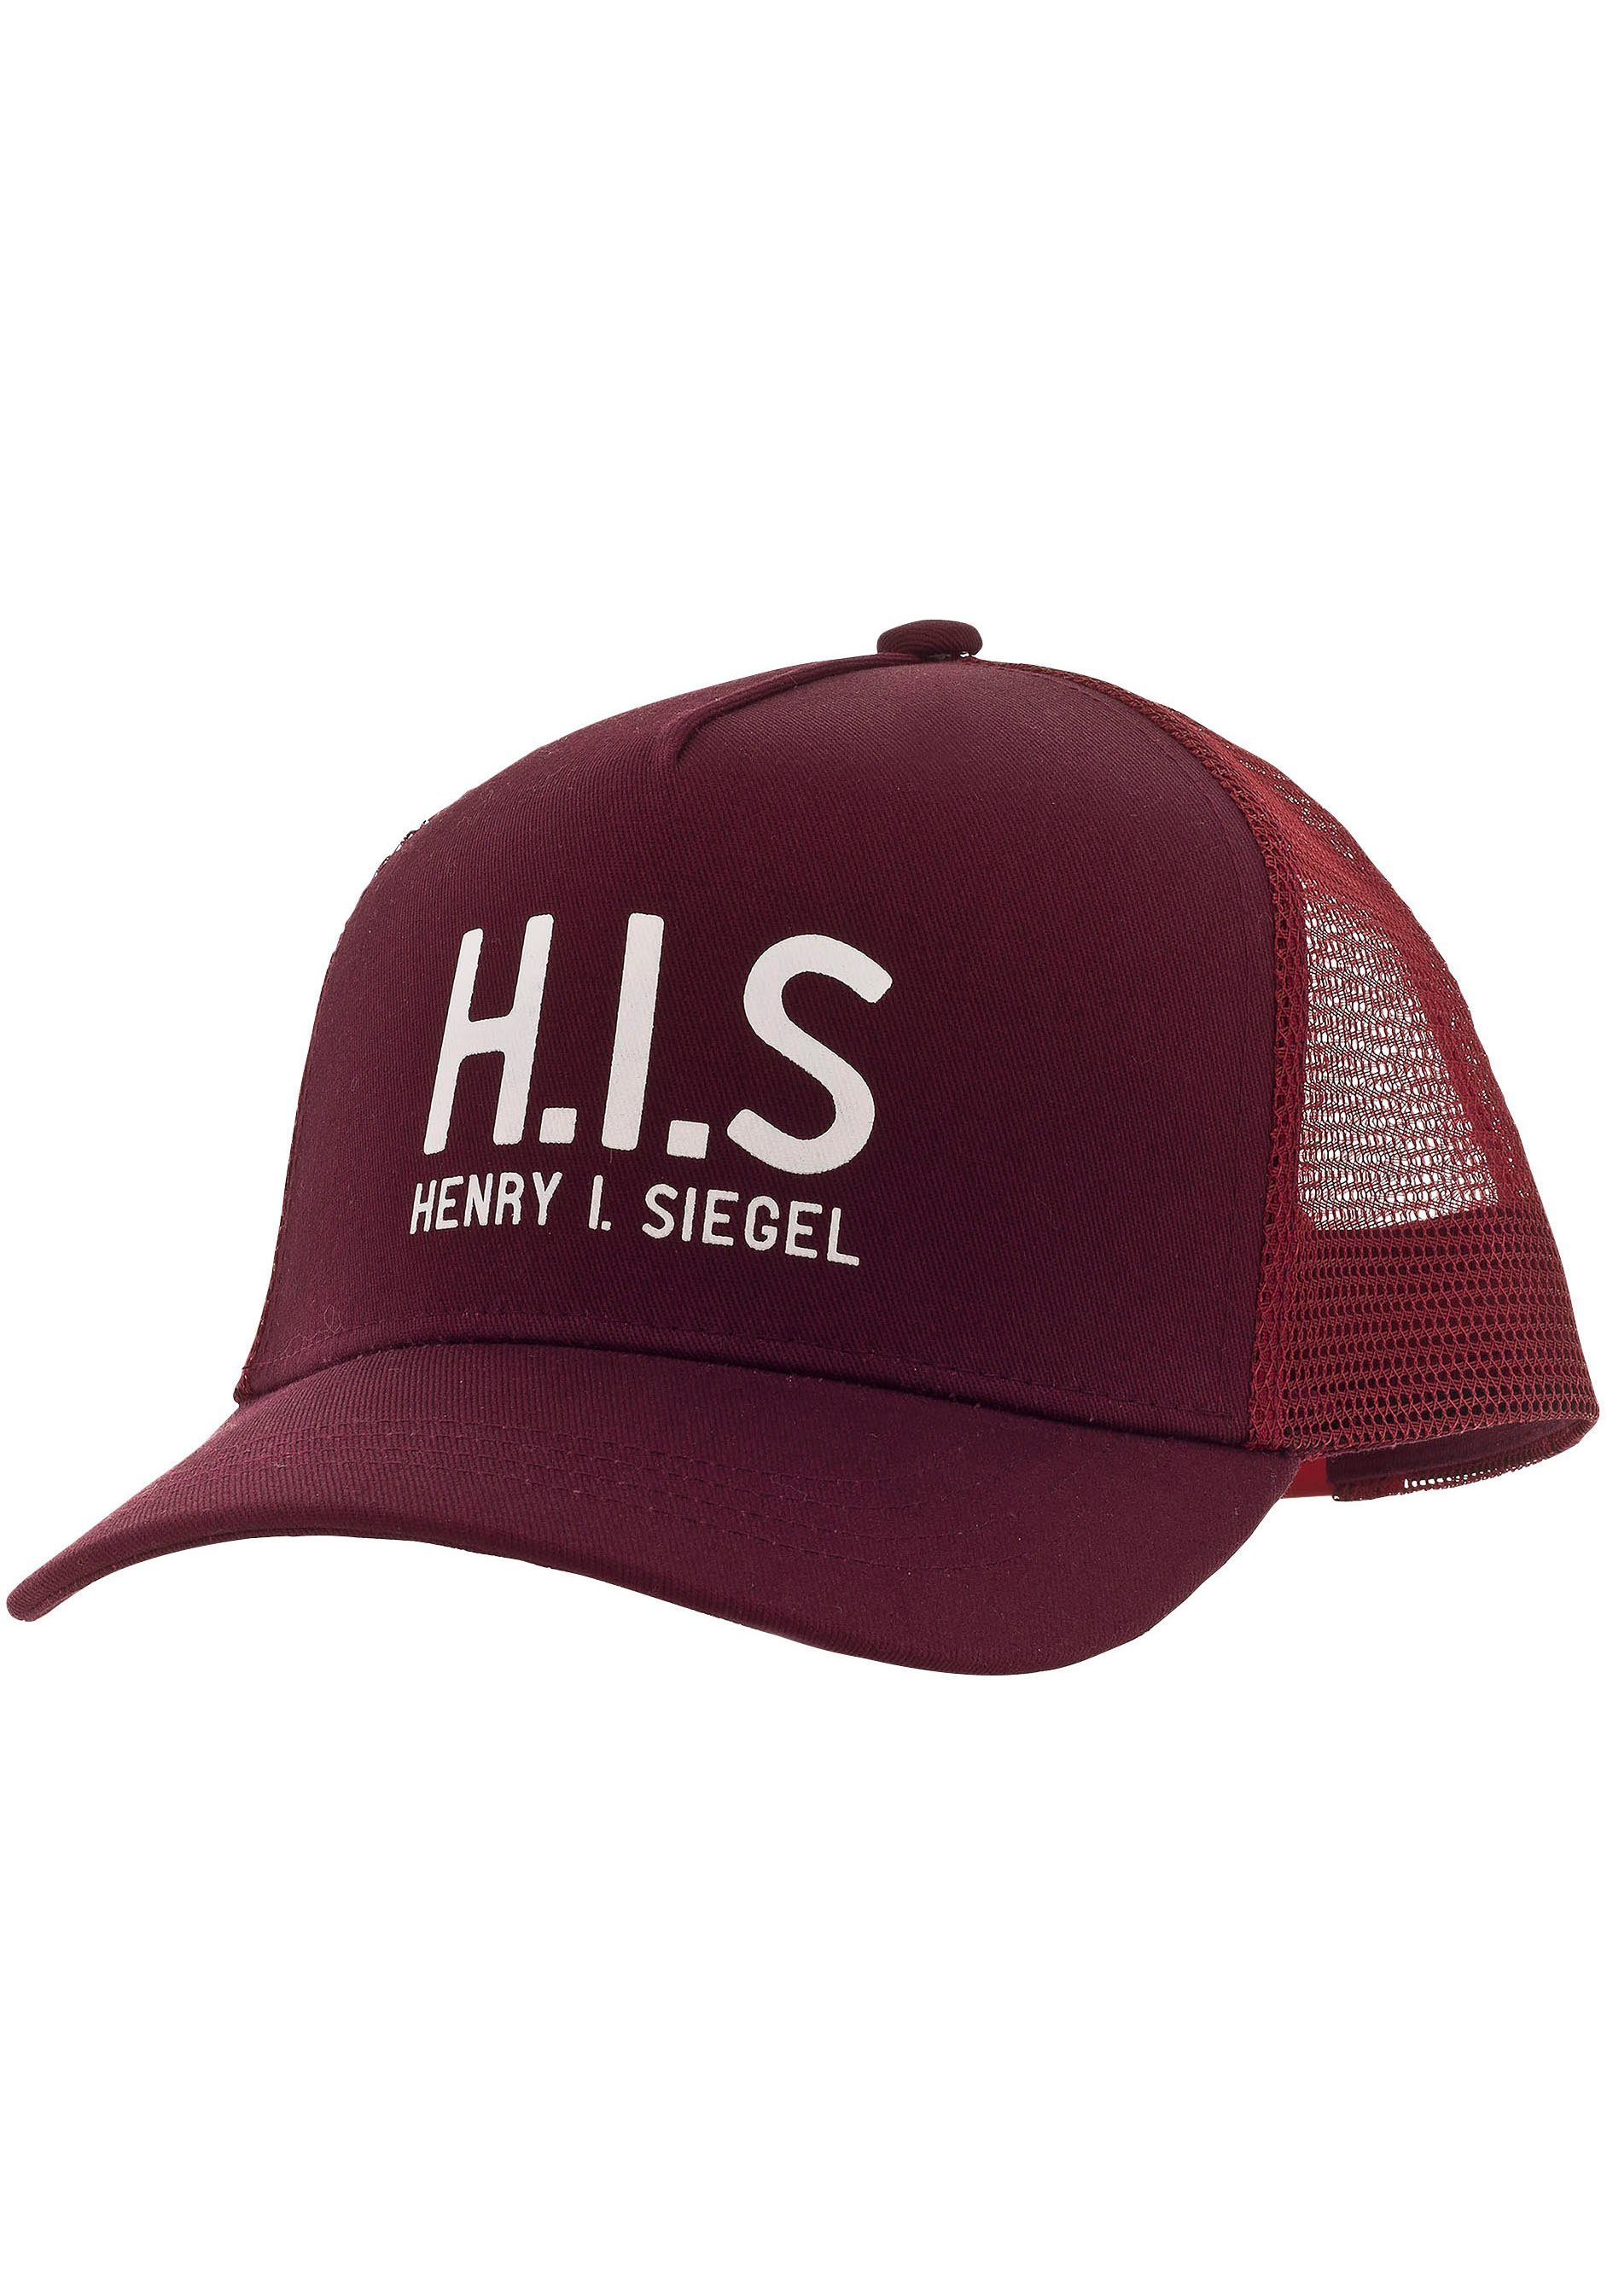 H.I.S Baseball bordeaux Mesh-Cap Cap mit H.I.S.-Print